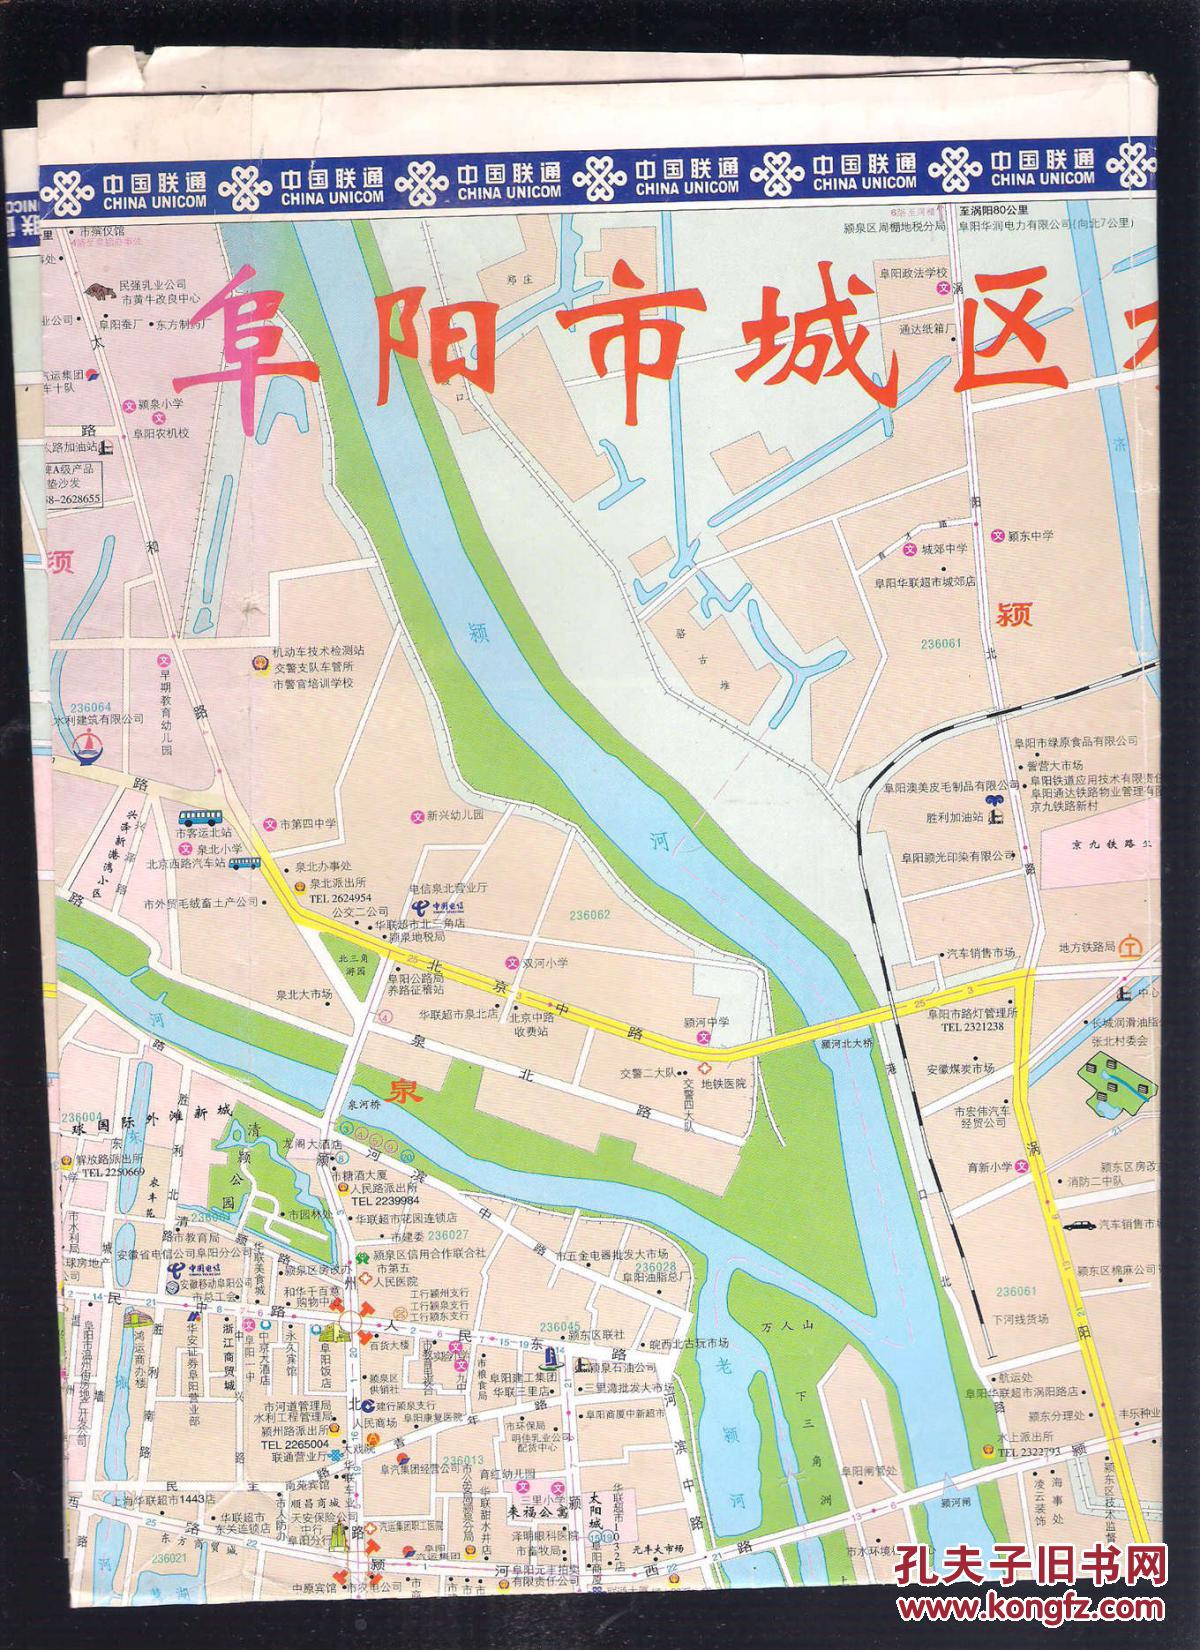 【图】旧地图旅游图 2005年折装2开【阜阳市